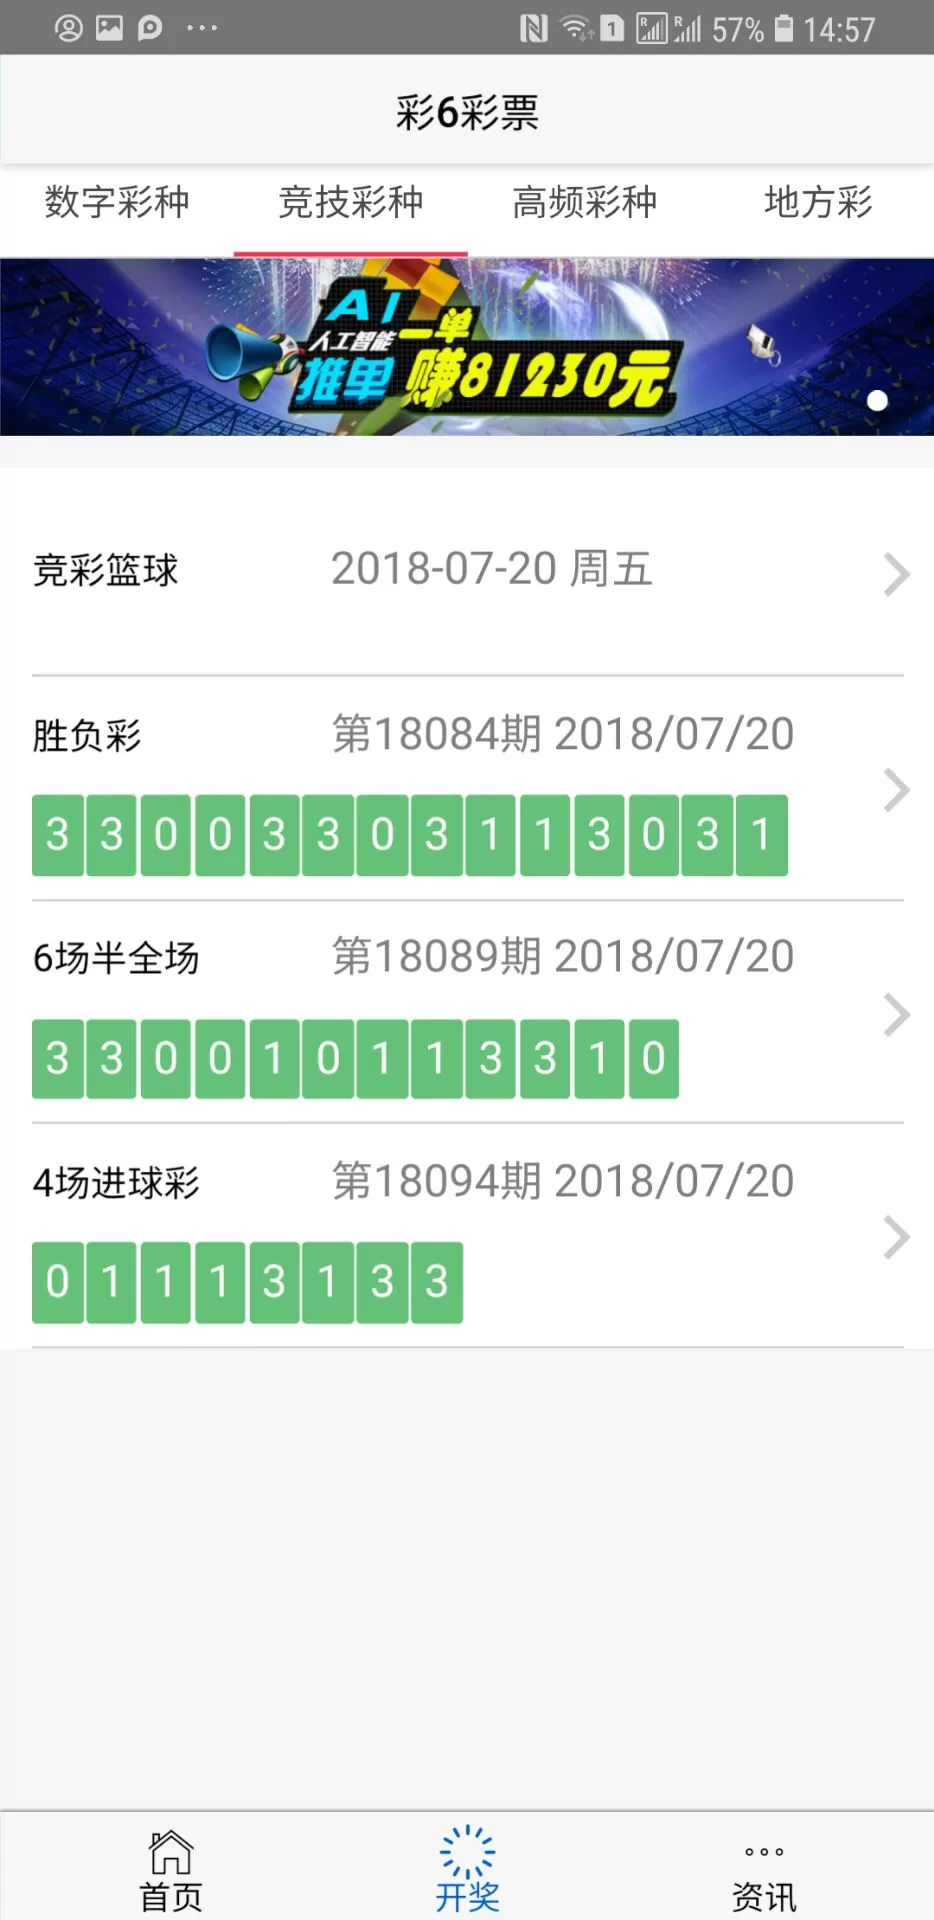 快三彩票app平台官方下载